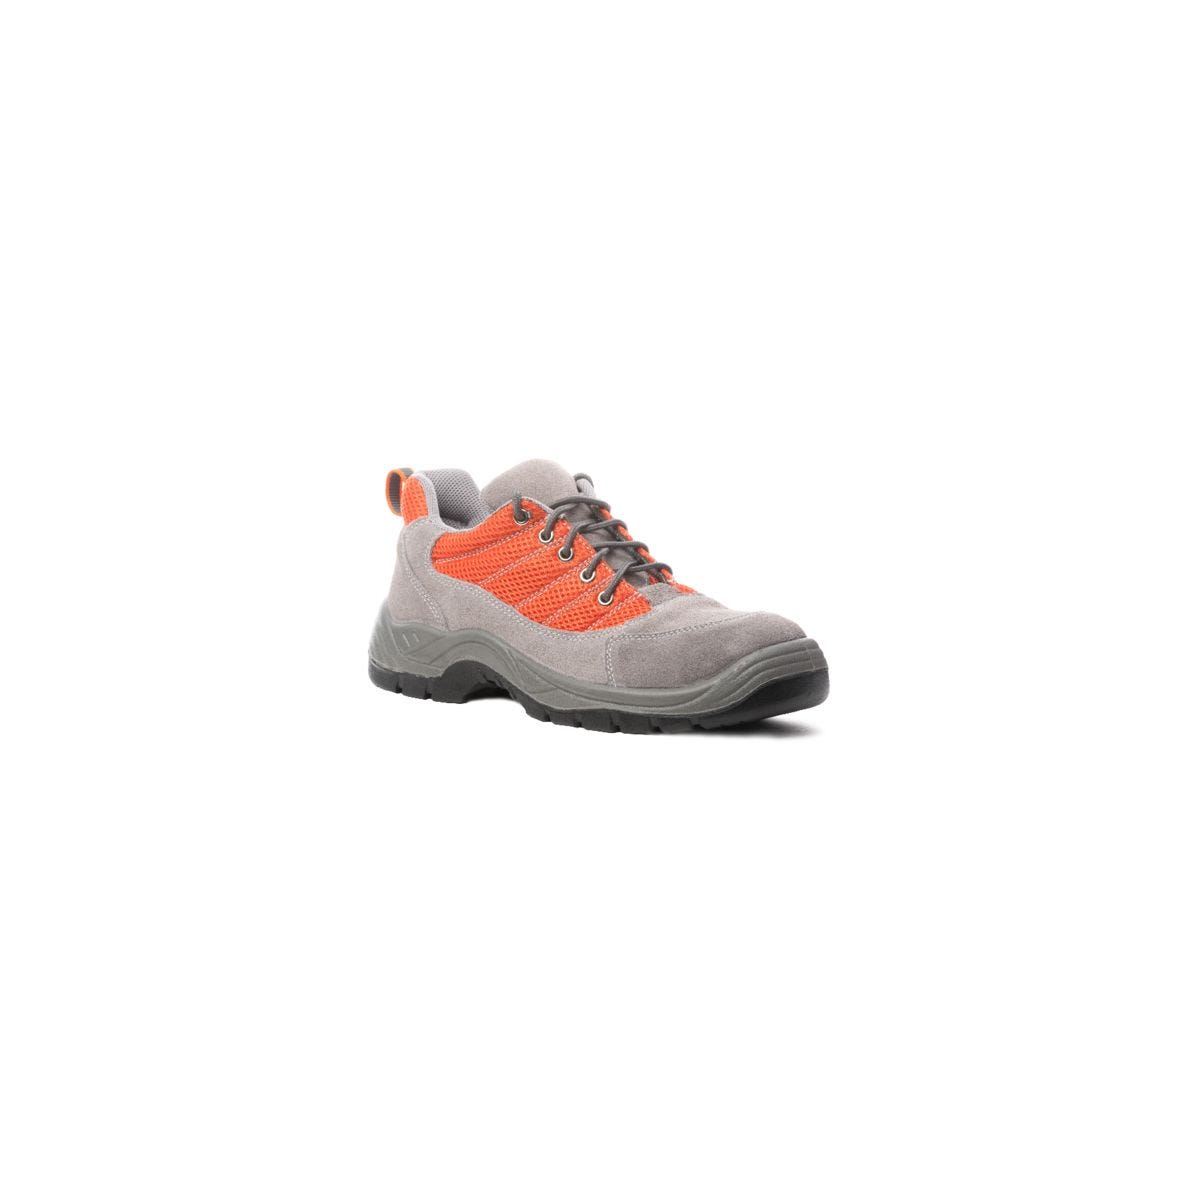 Chaussures de sécurité SPINELLE S1P basse orange - COVERGUARD - Taille 44 0